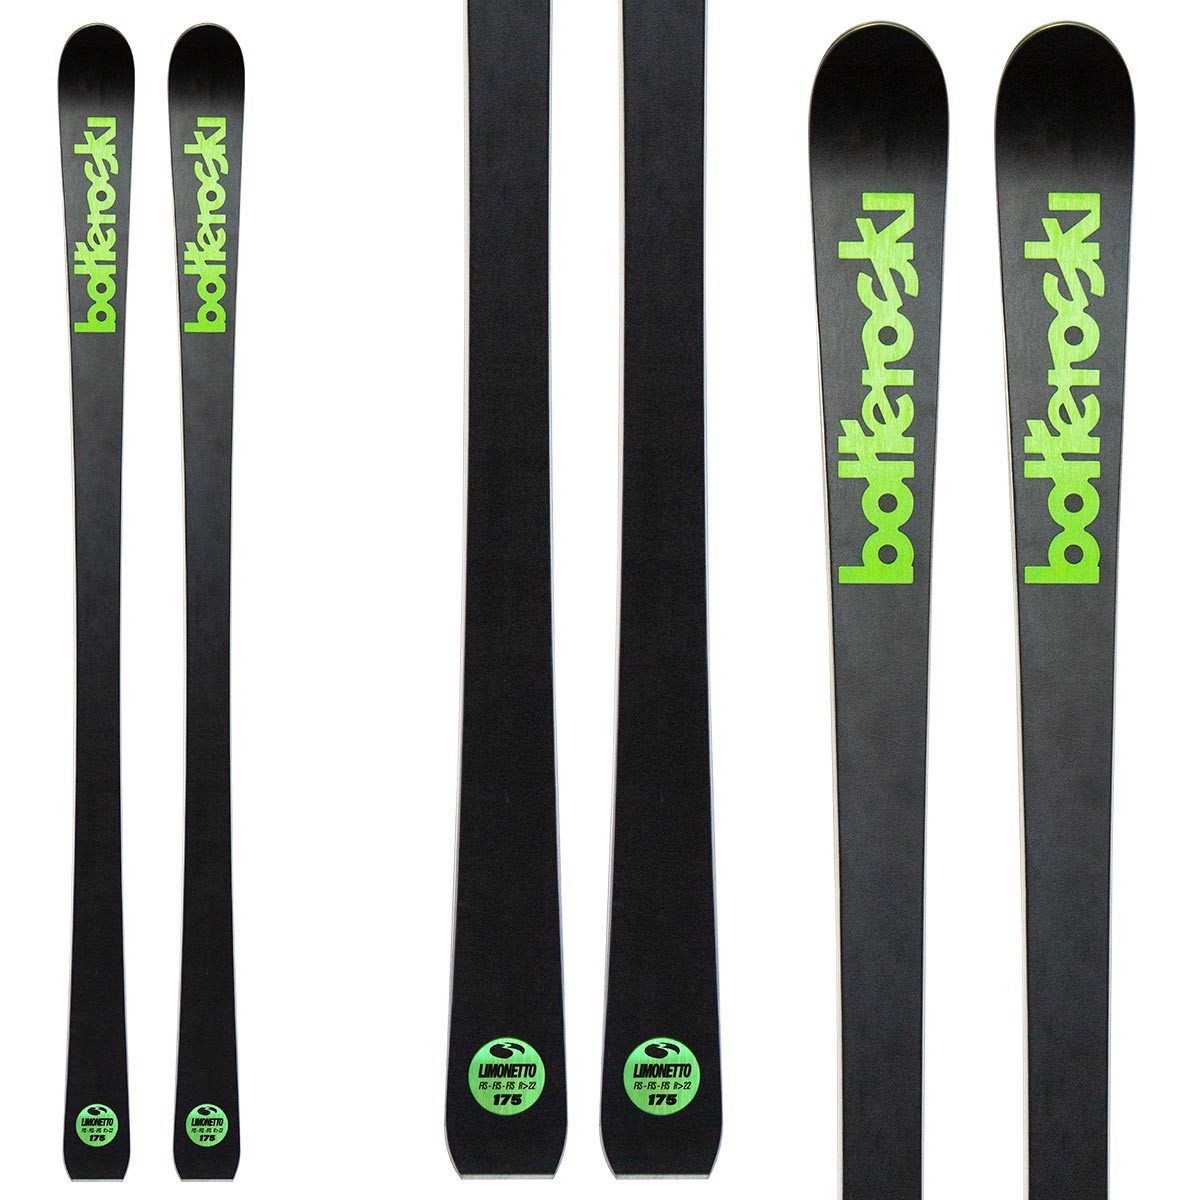  Sci Bottero Ski Limonetto con attacchi V614 con piastra WC Race V10 (Colore: nero-verde, Taglia: 170) 